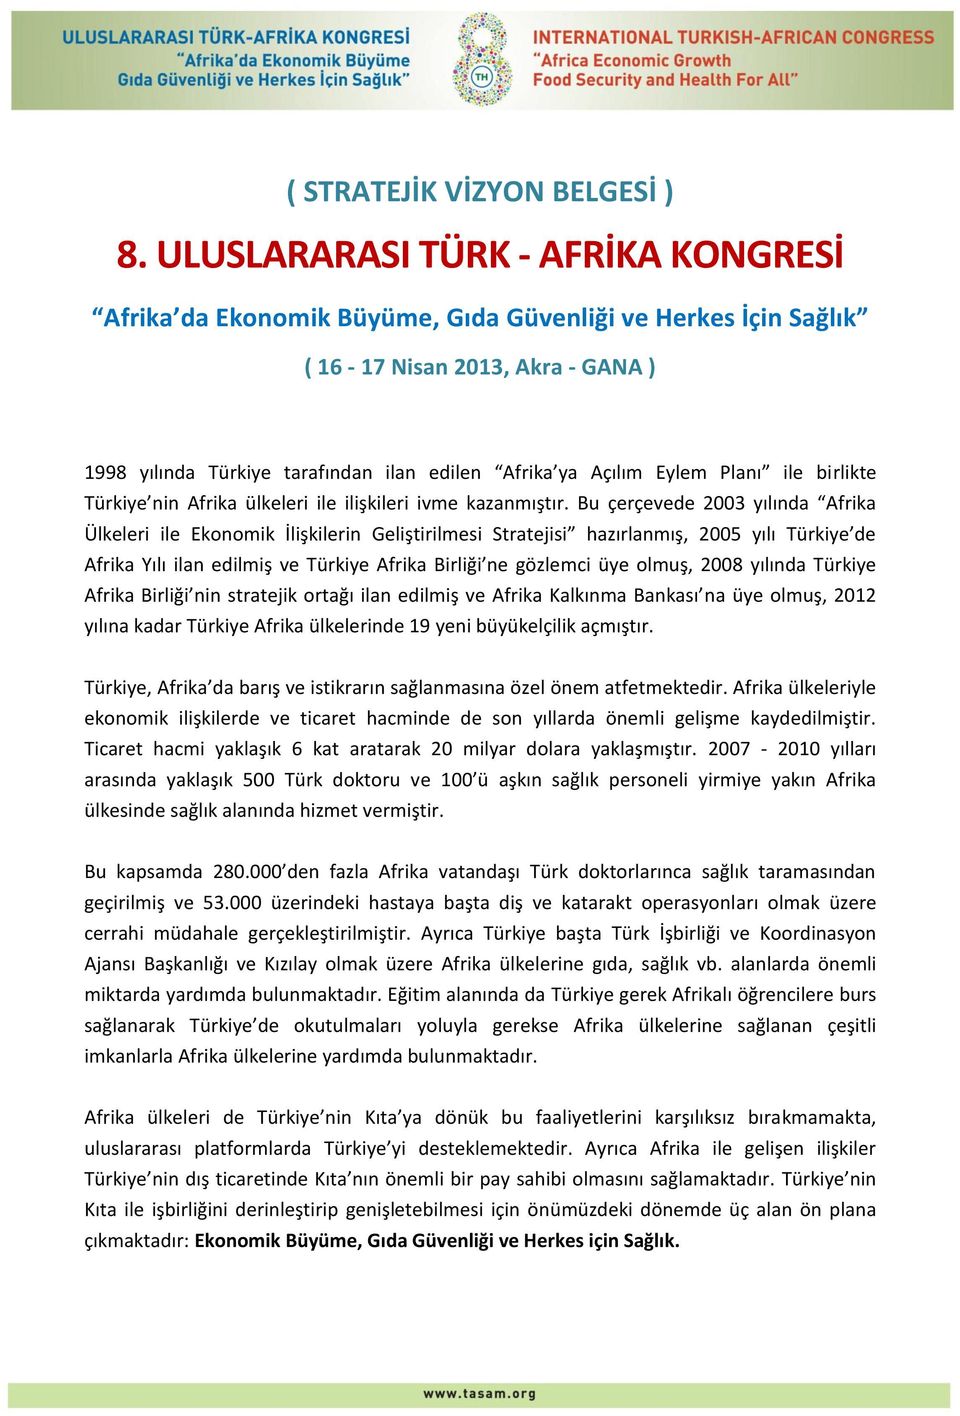 Eylem Planı ile birlikte Türkiye nin Afrika ülkeleri ile ilişkileri ivme kazanmıştır.